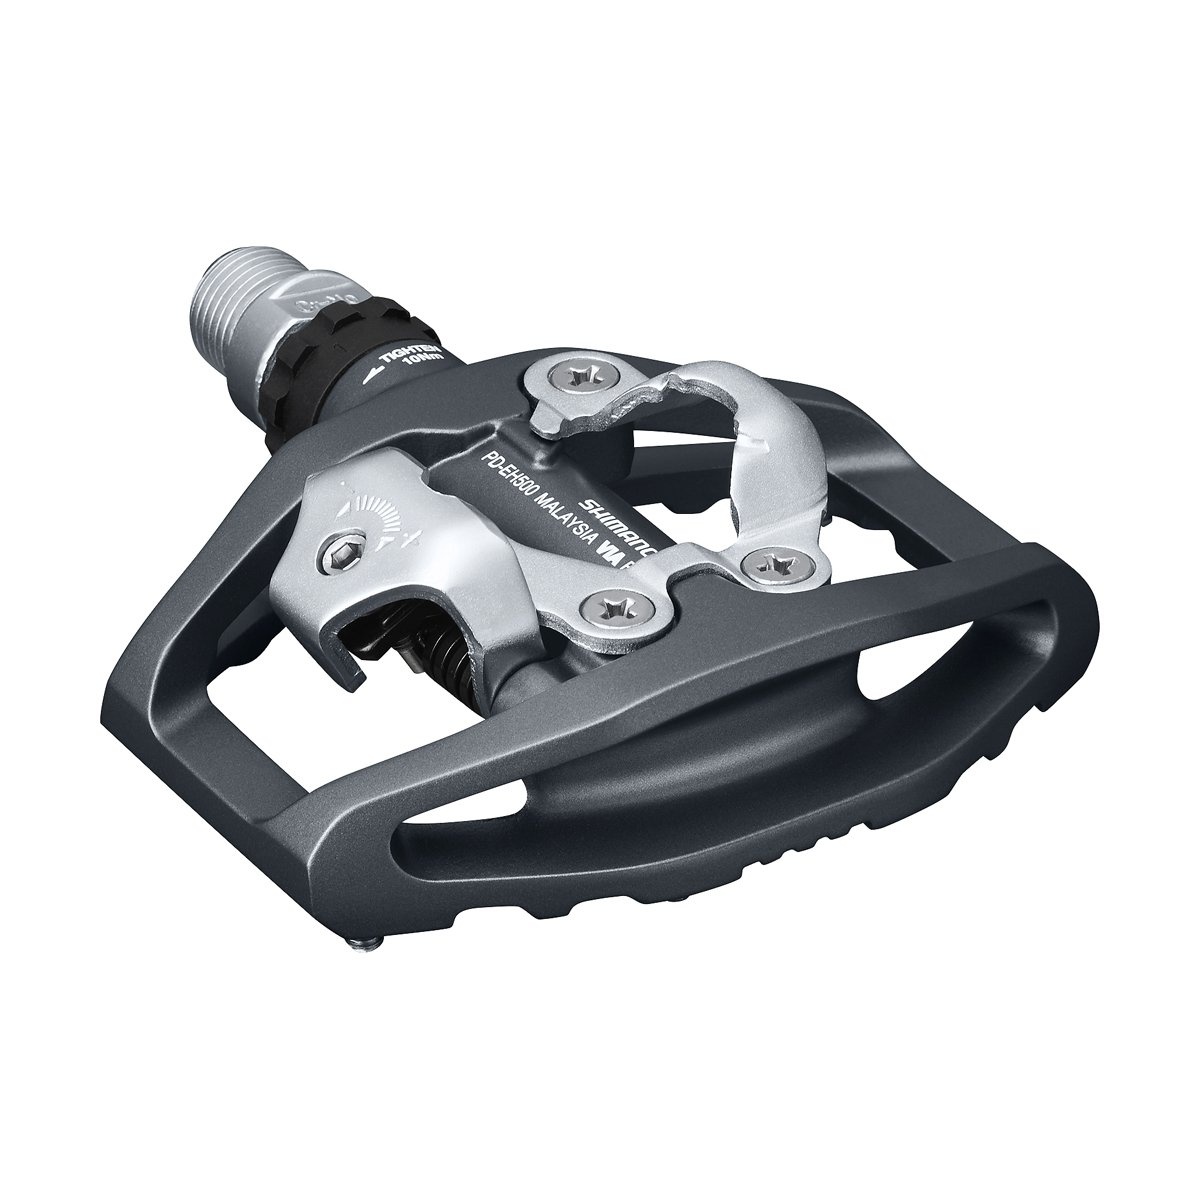 Tilbehør - Pedaler & Klamper - Shimano PD-EH500 kombi pedal inkl. klampe